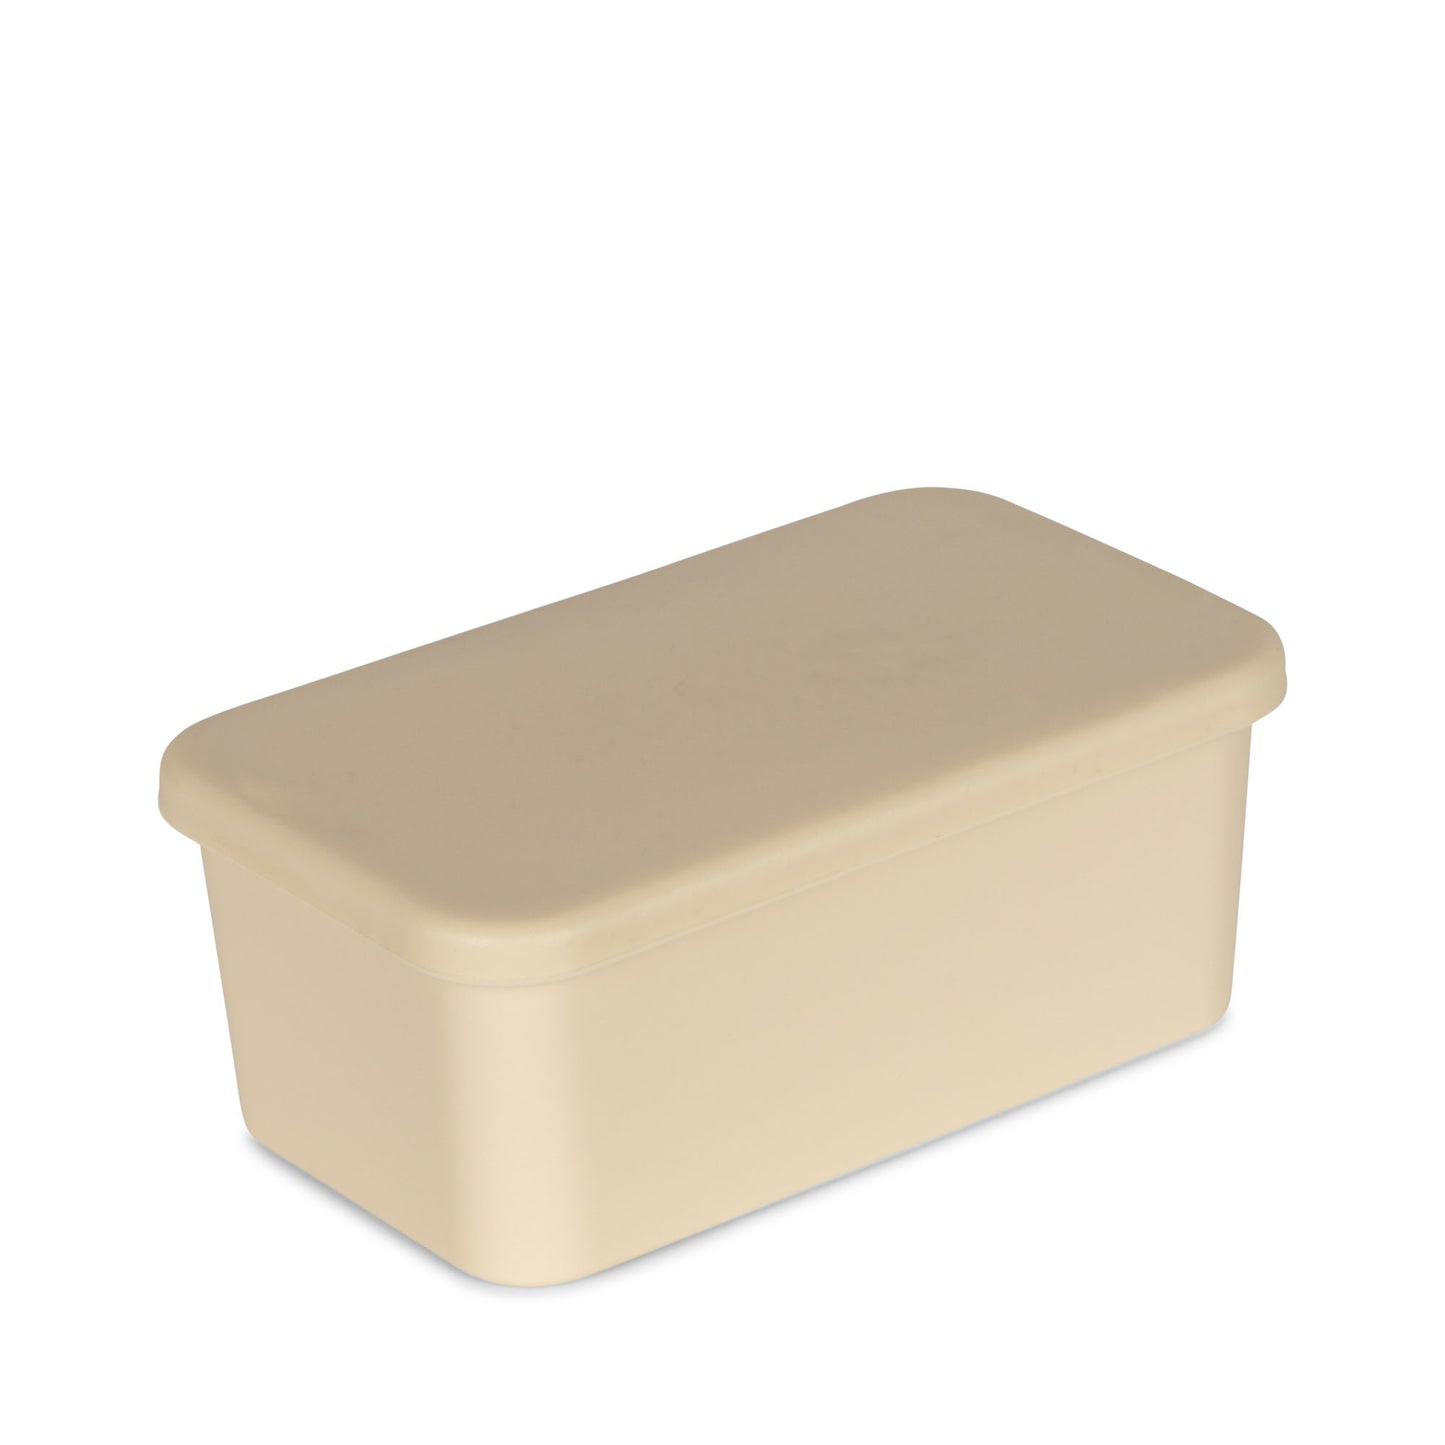 Lunch box - Safari